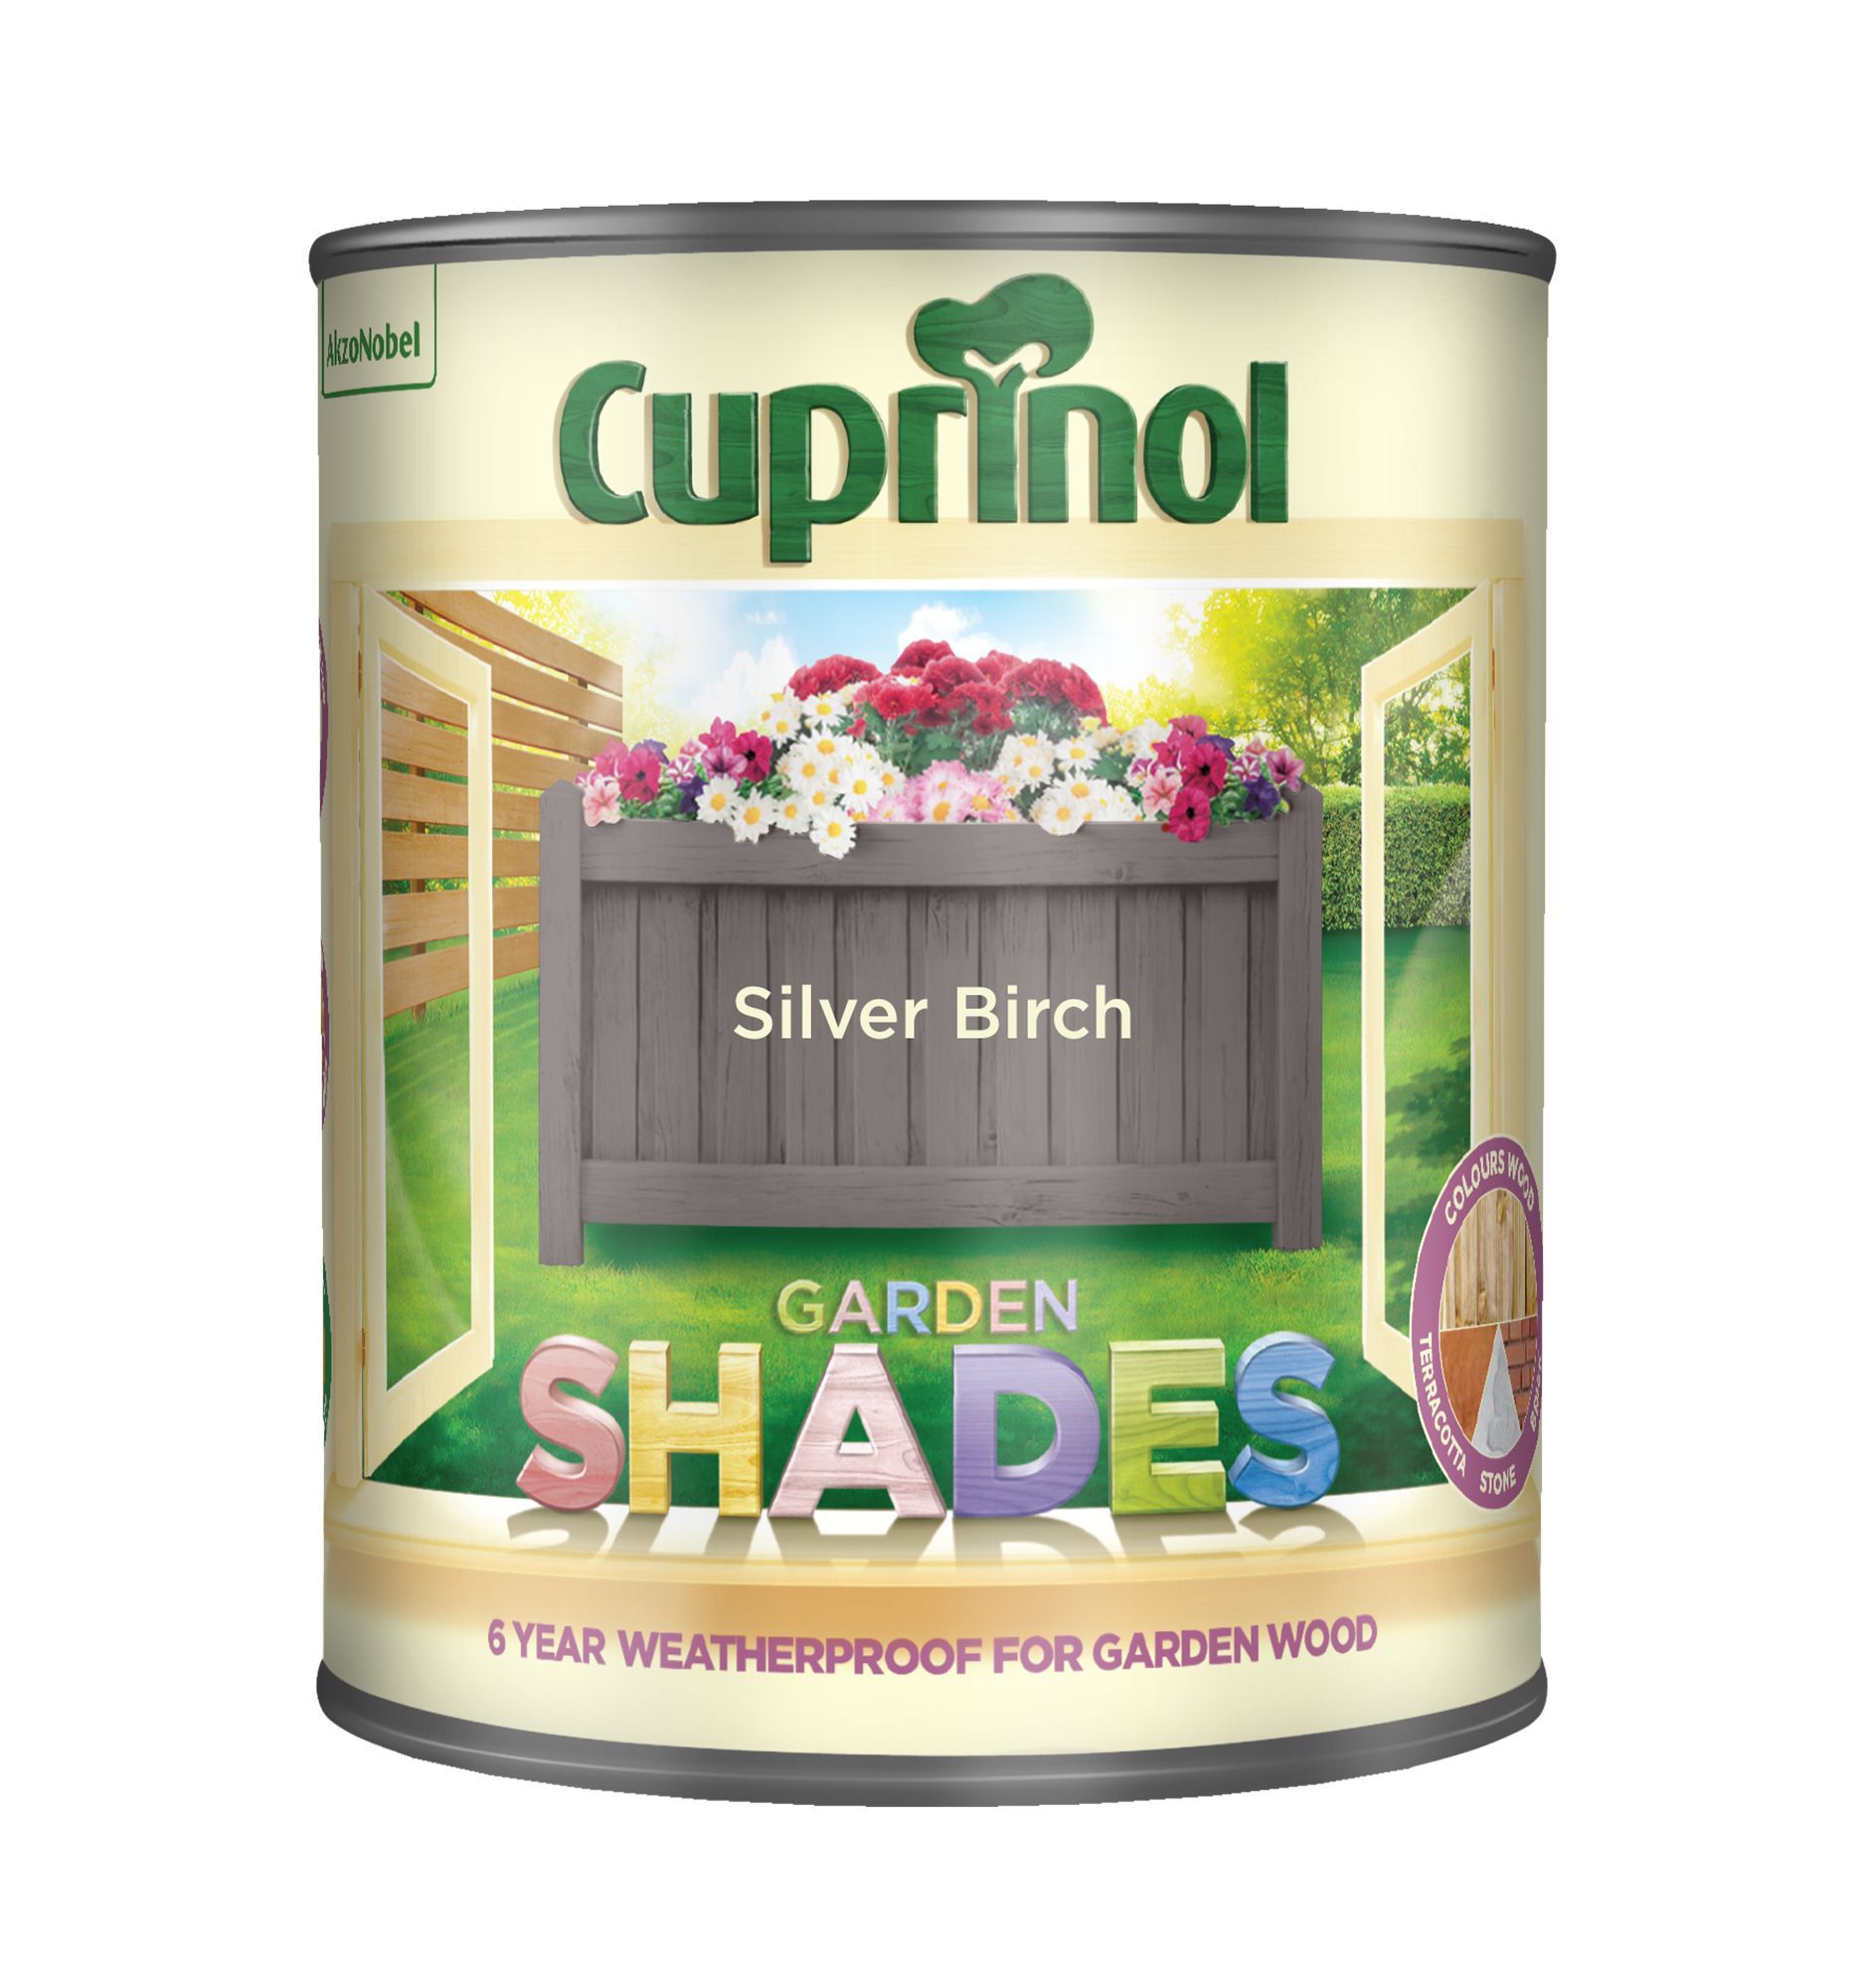 Cuprinol Garden shades Silver birch Matt Multi-surface Exterior Wood paint, 1L